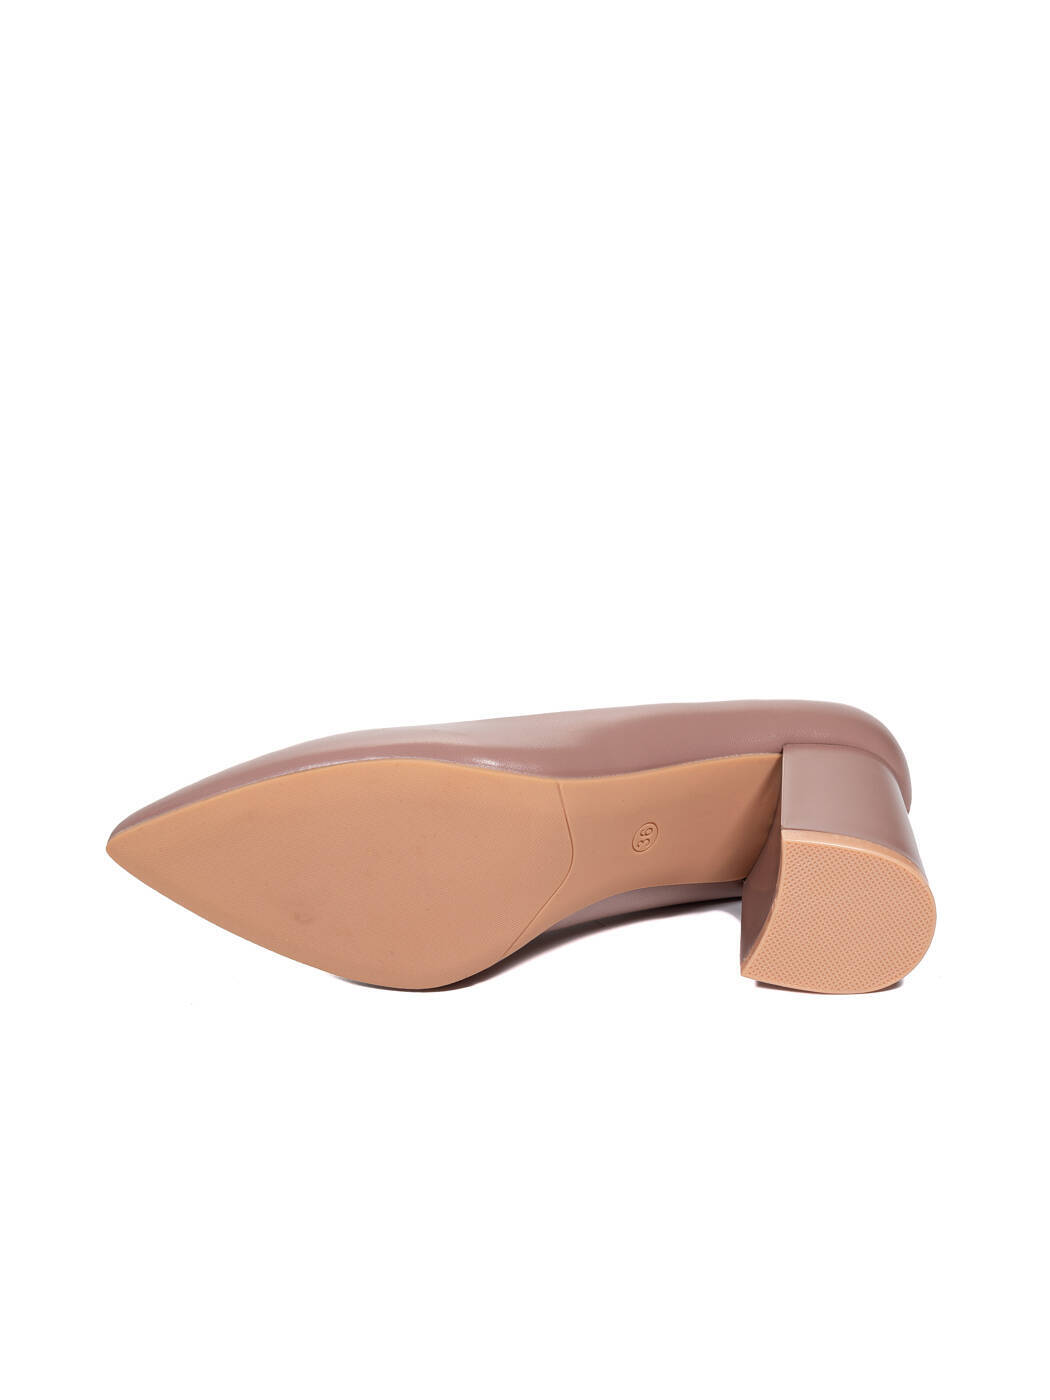 Туфли женские розовые экокожа каблук устойчивый демисезон от производителя HM вид 2